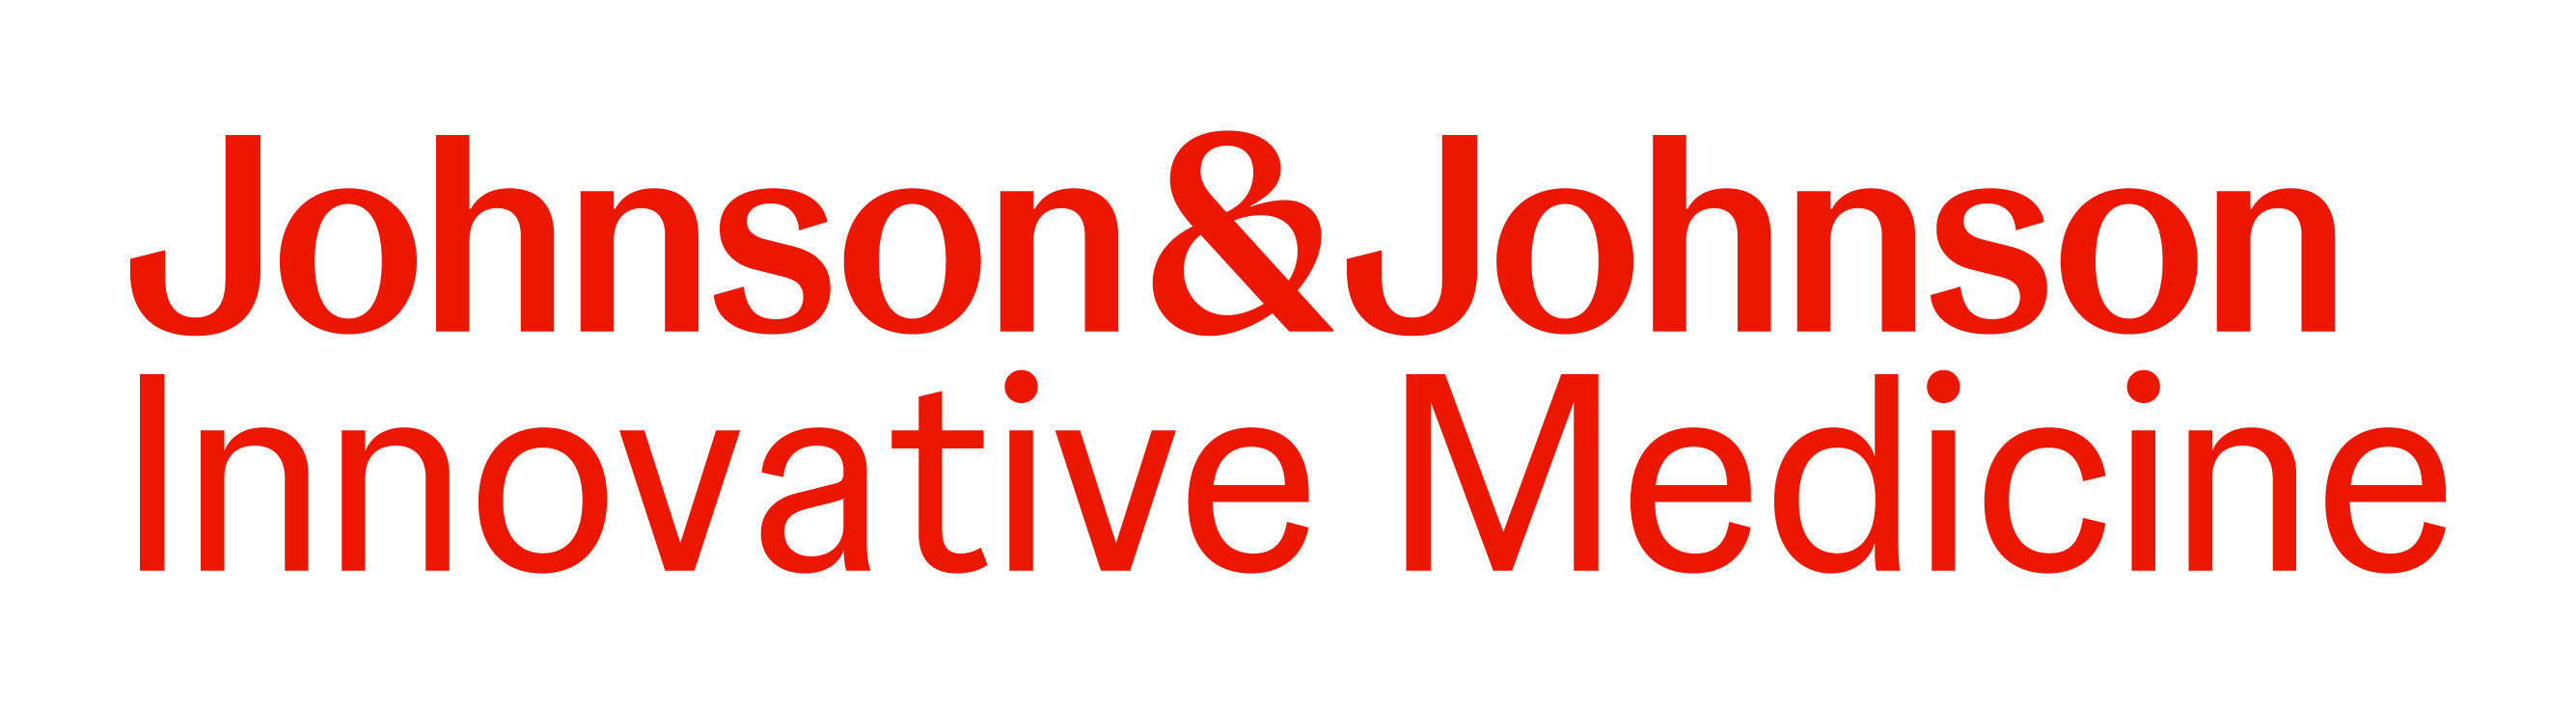 Johnson & Johnson Innovative Medicine